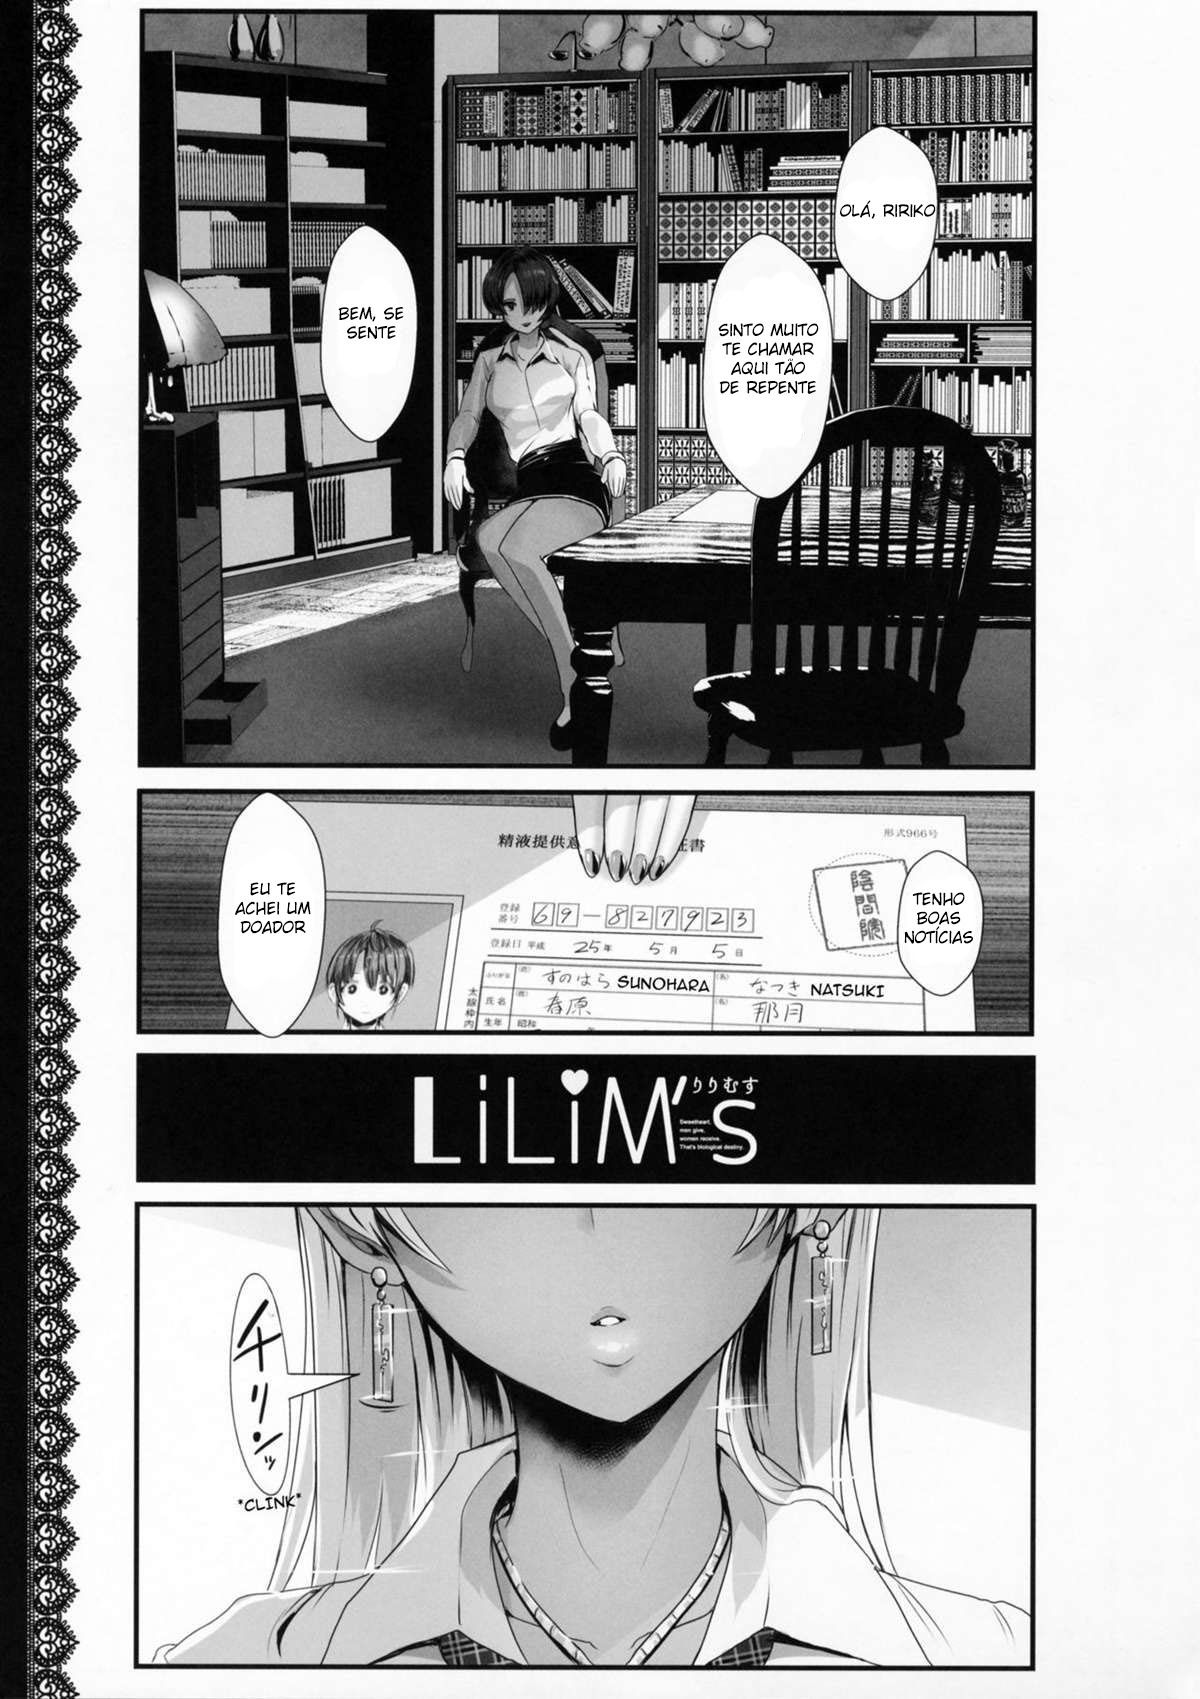 LiLiM’s - Foto 2